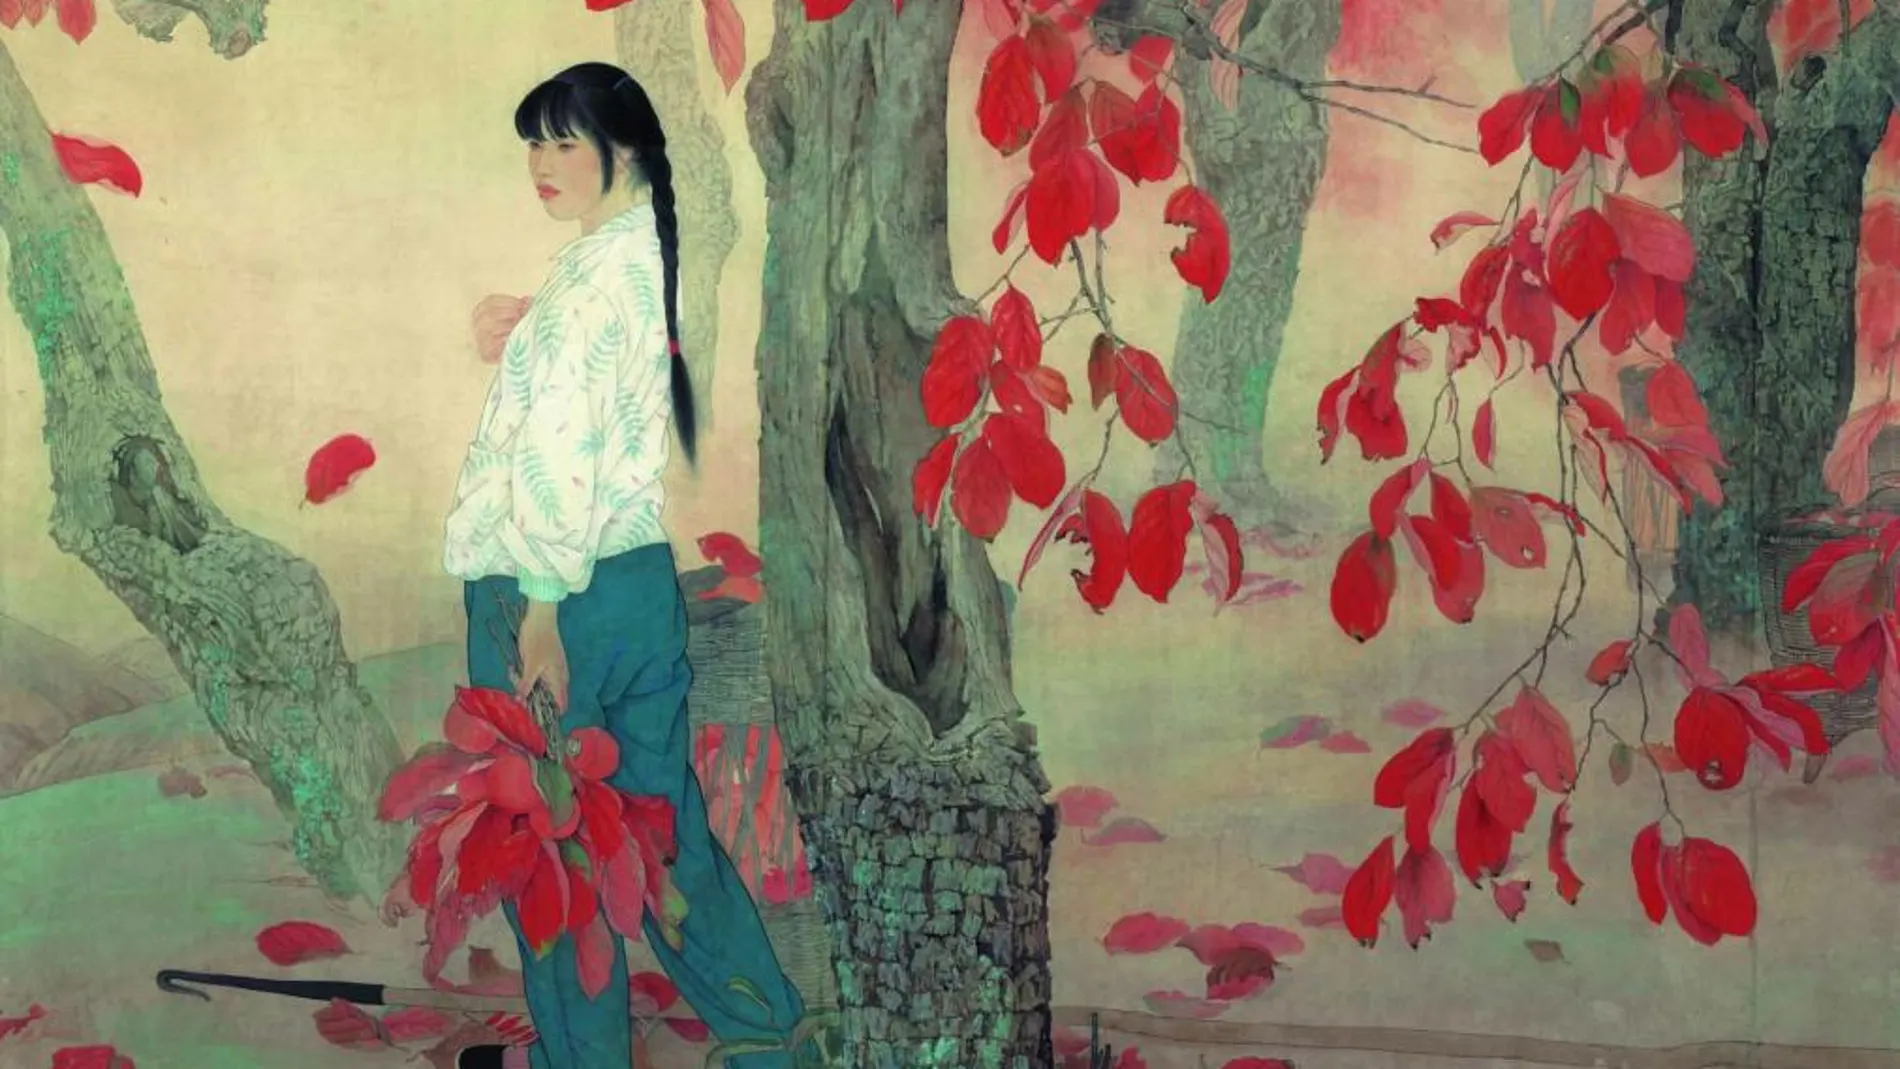 La mujer capitaliza la obra del pintor chino He Jiaying, que por primera vez se exhibe en Europa